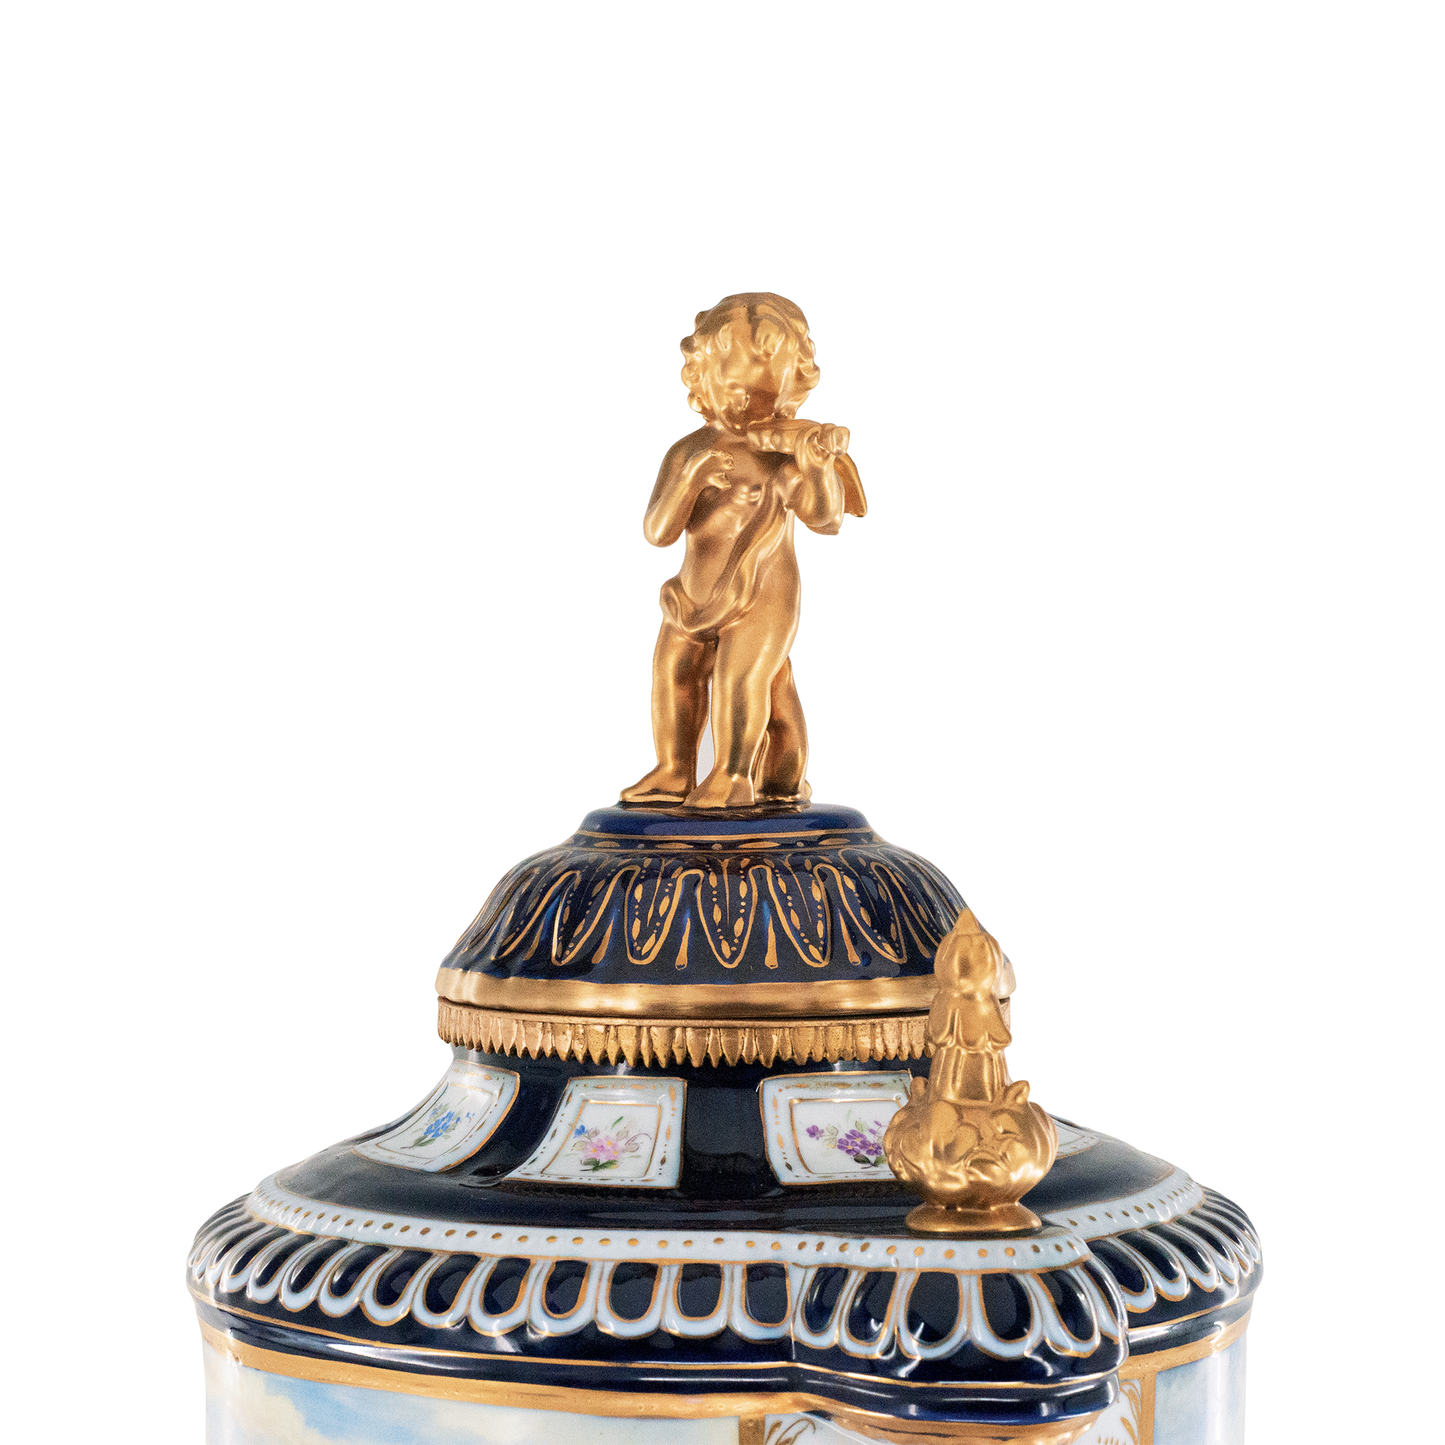 Porcelain Lady Handle mythological Urn